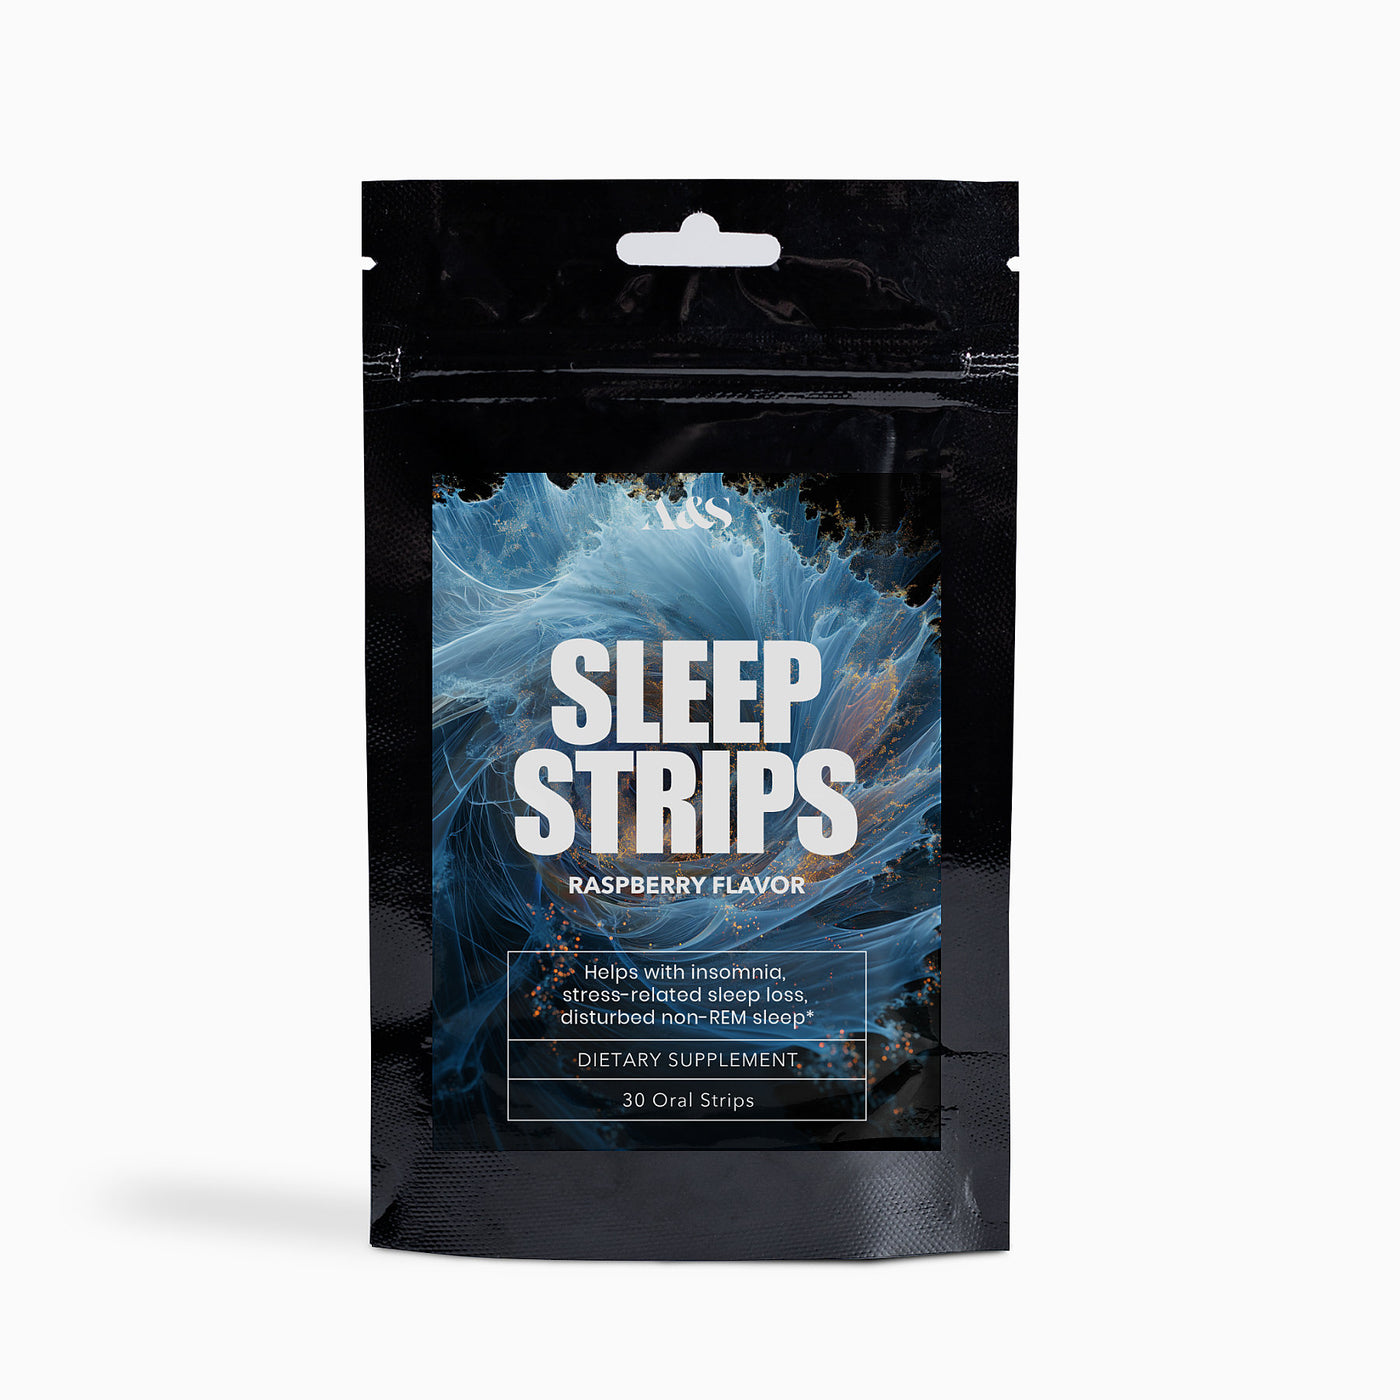 A&S Sleep Strips